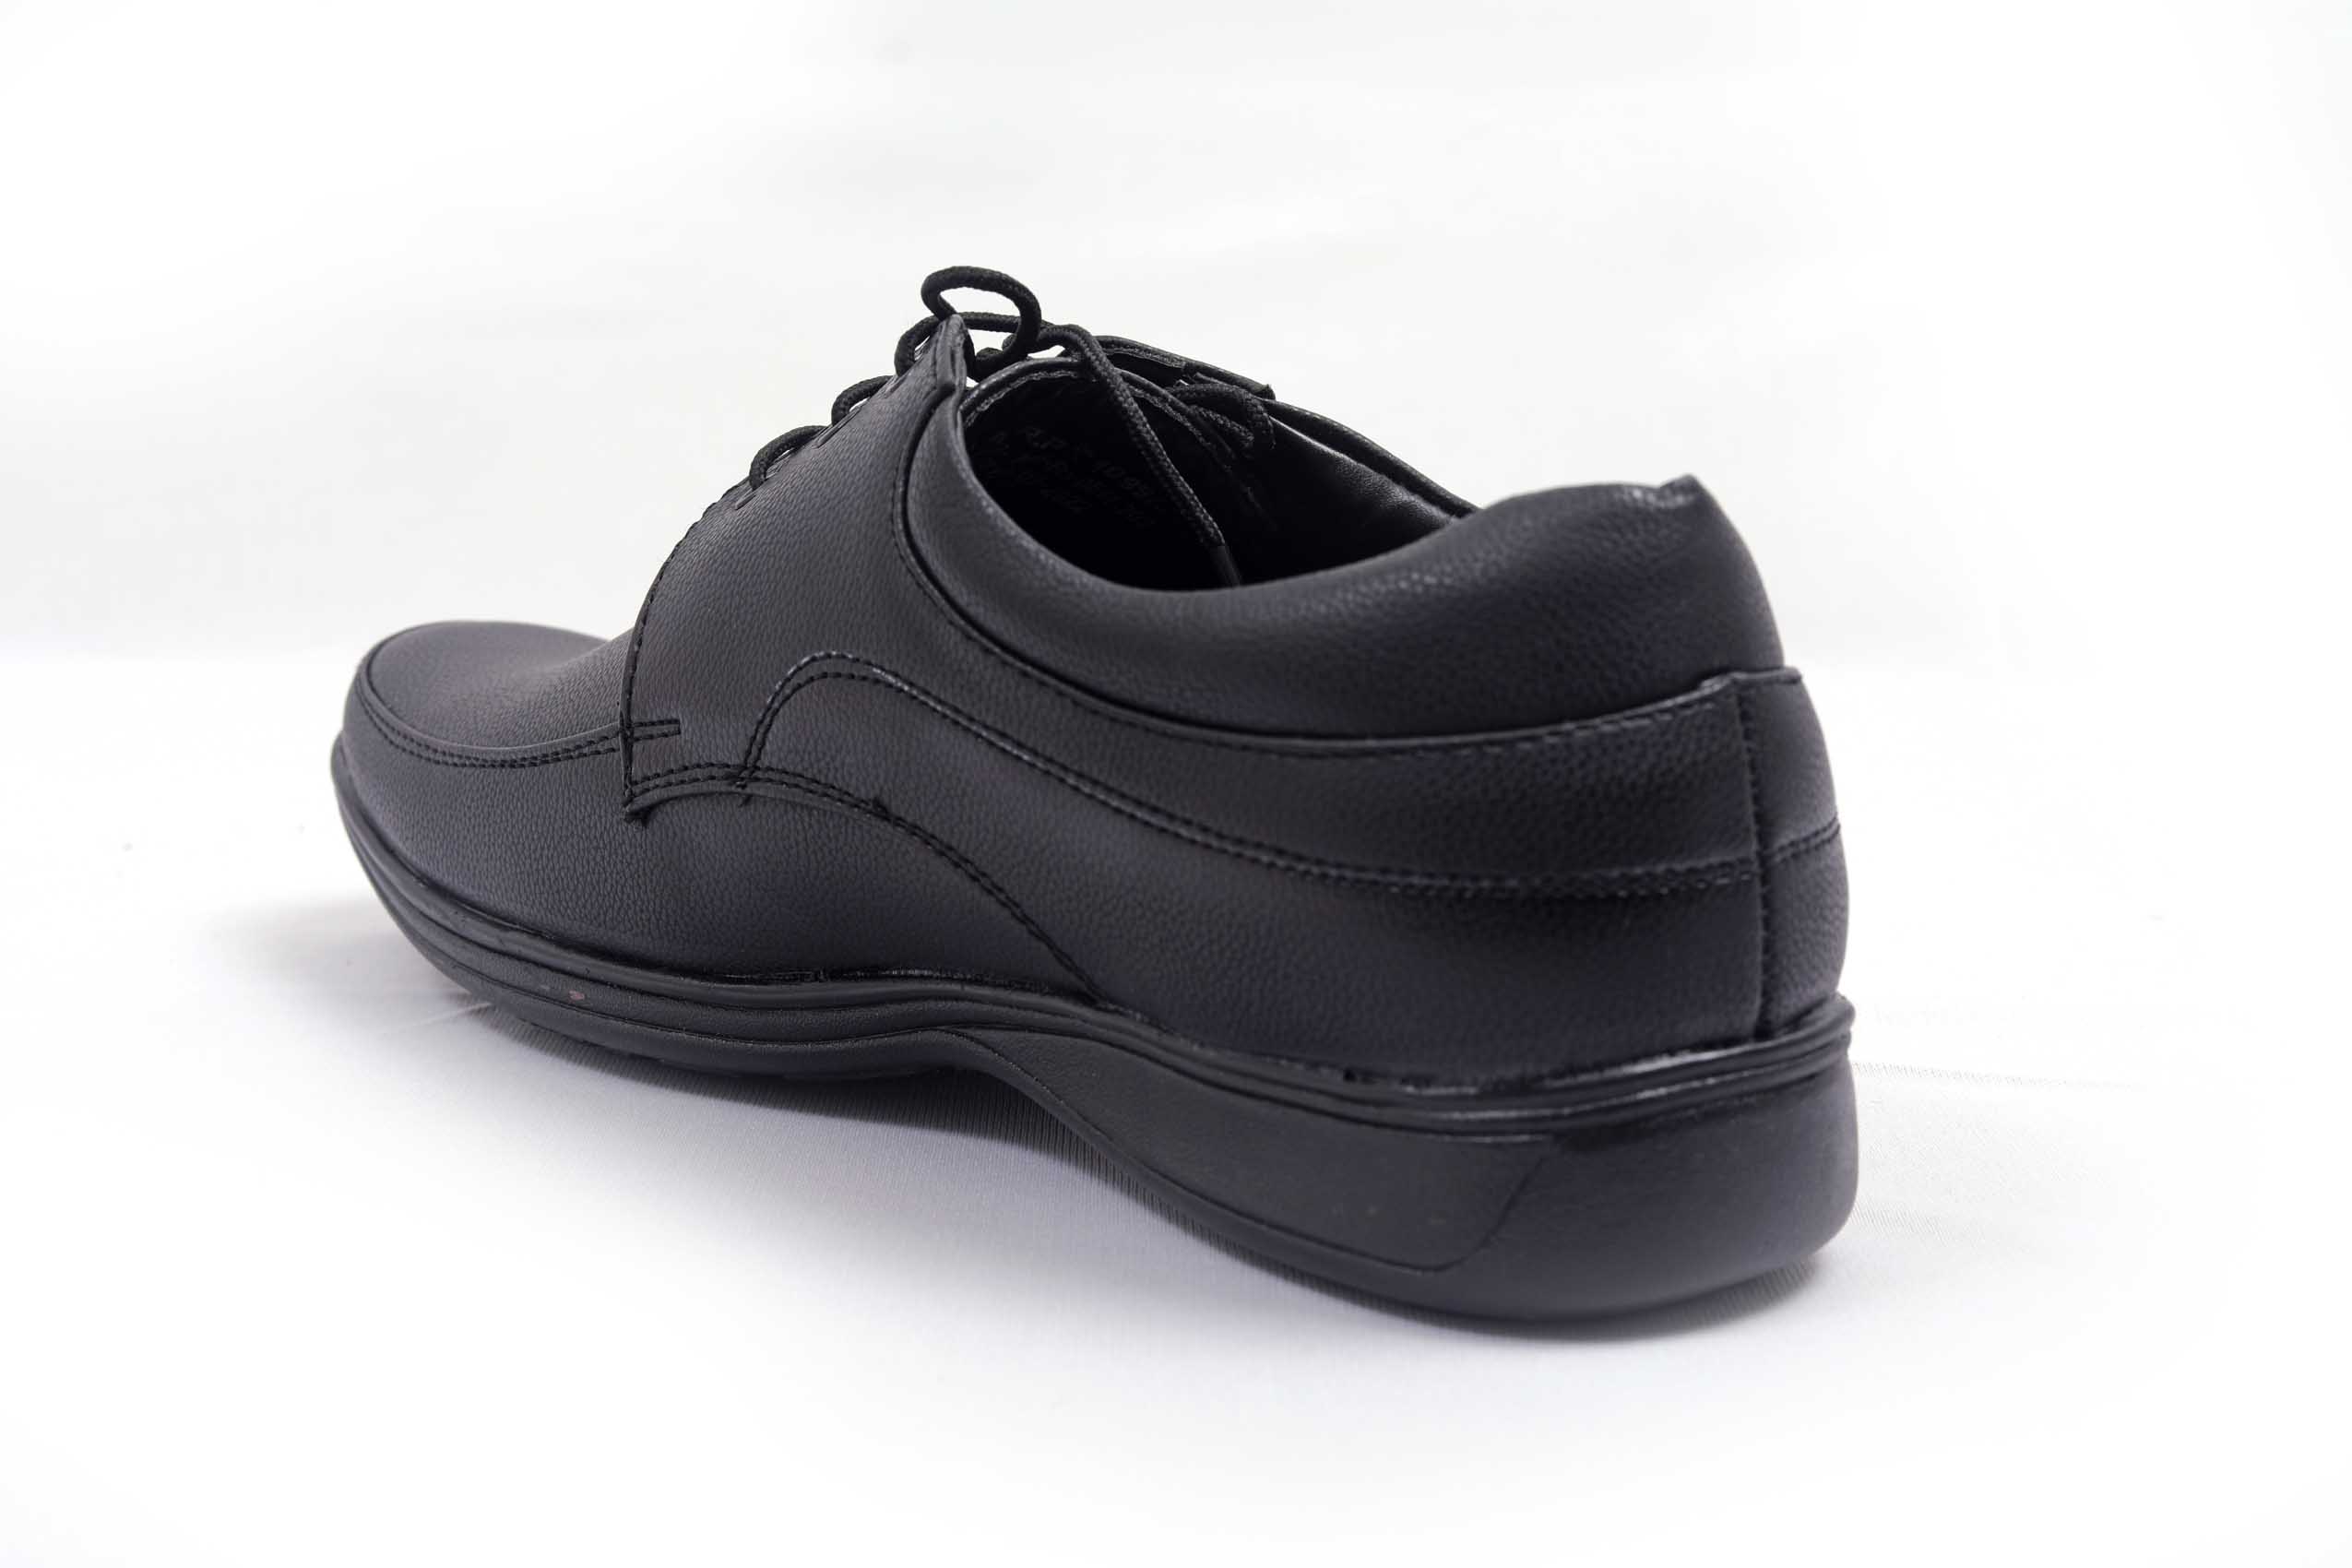 Pair-it Men derby Formal Shoes - Black-MN-RYDER203